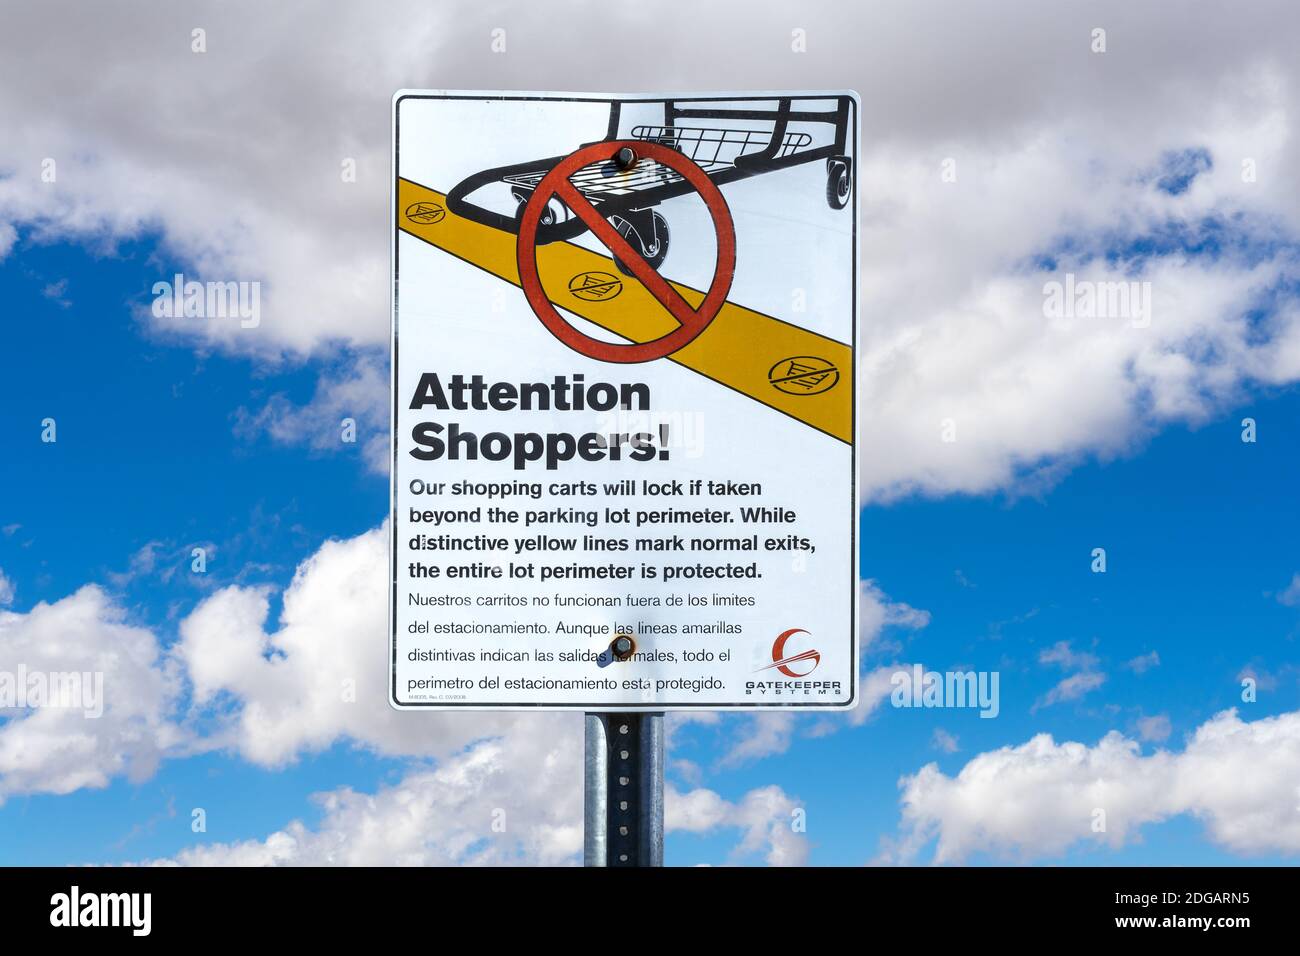 Brea, CA / USA – 27 novembre 2020: Un cartello di avvertimento a Brea, California, che informa gli acquirenti che le ruote dei carrelli si bloccheranno se passano un giallo Foto Stock